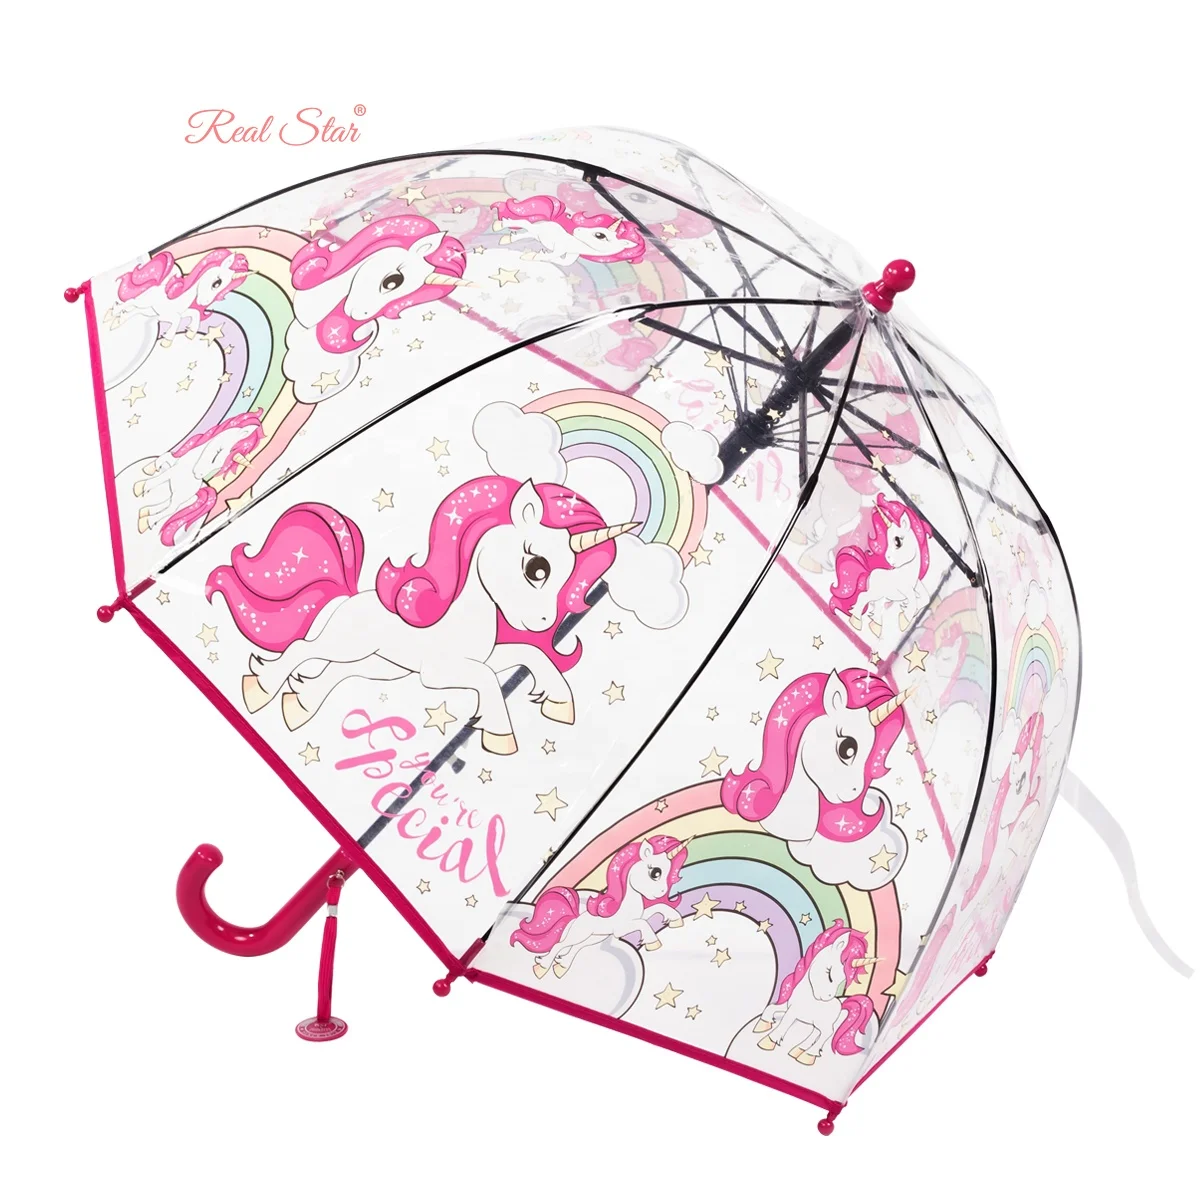 RST Гуанчжоу оптовая продажа Детский дешевый зонтик новый купол 19 дюймов маленький размер прозрачный зонт с единорогом (60719318677)